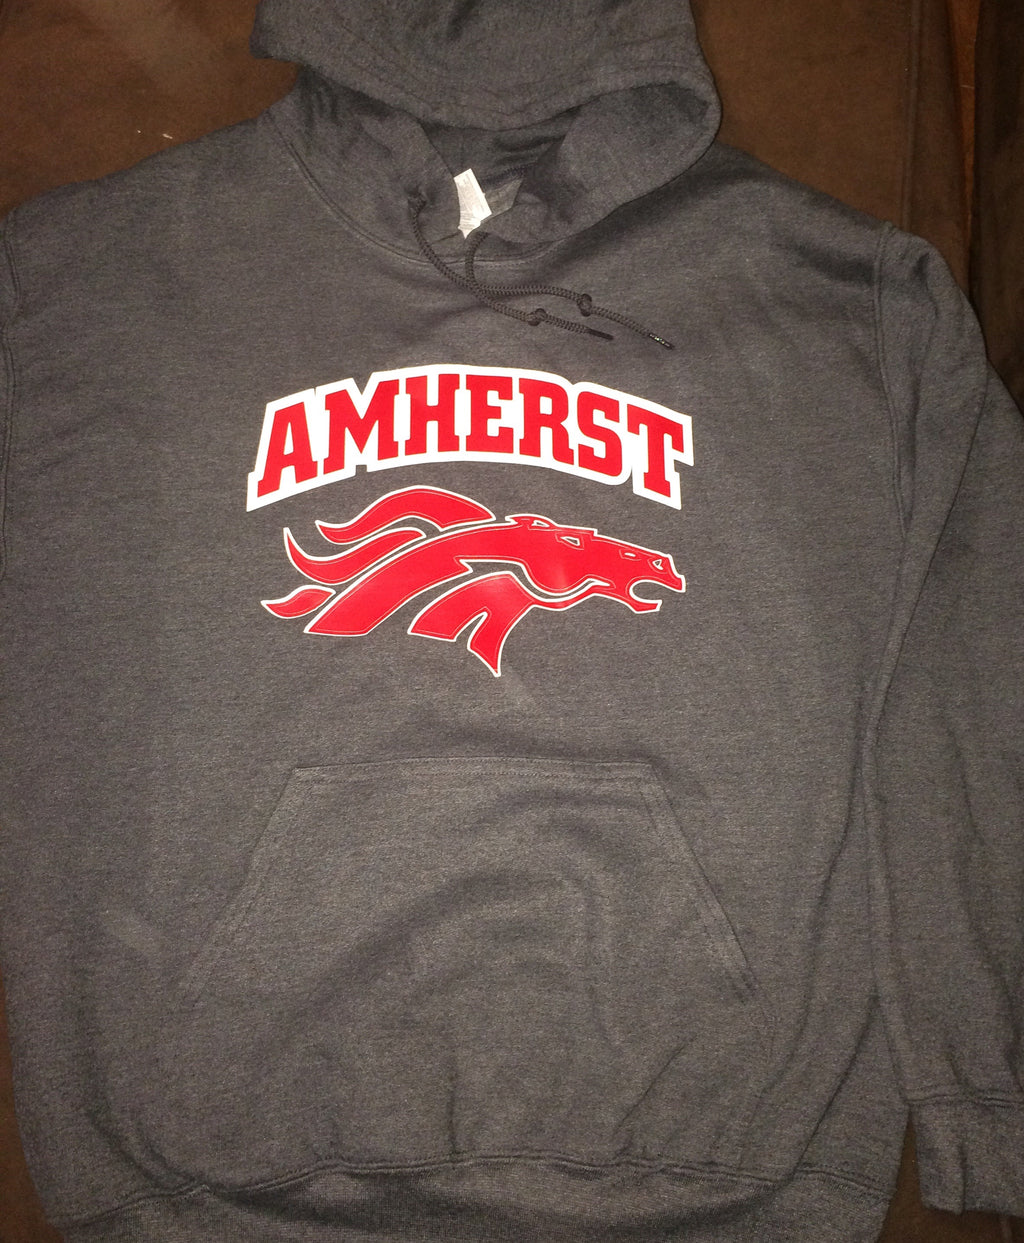 Your school Amherst Gildan Sweatshirt any design